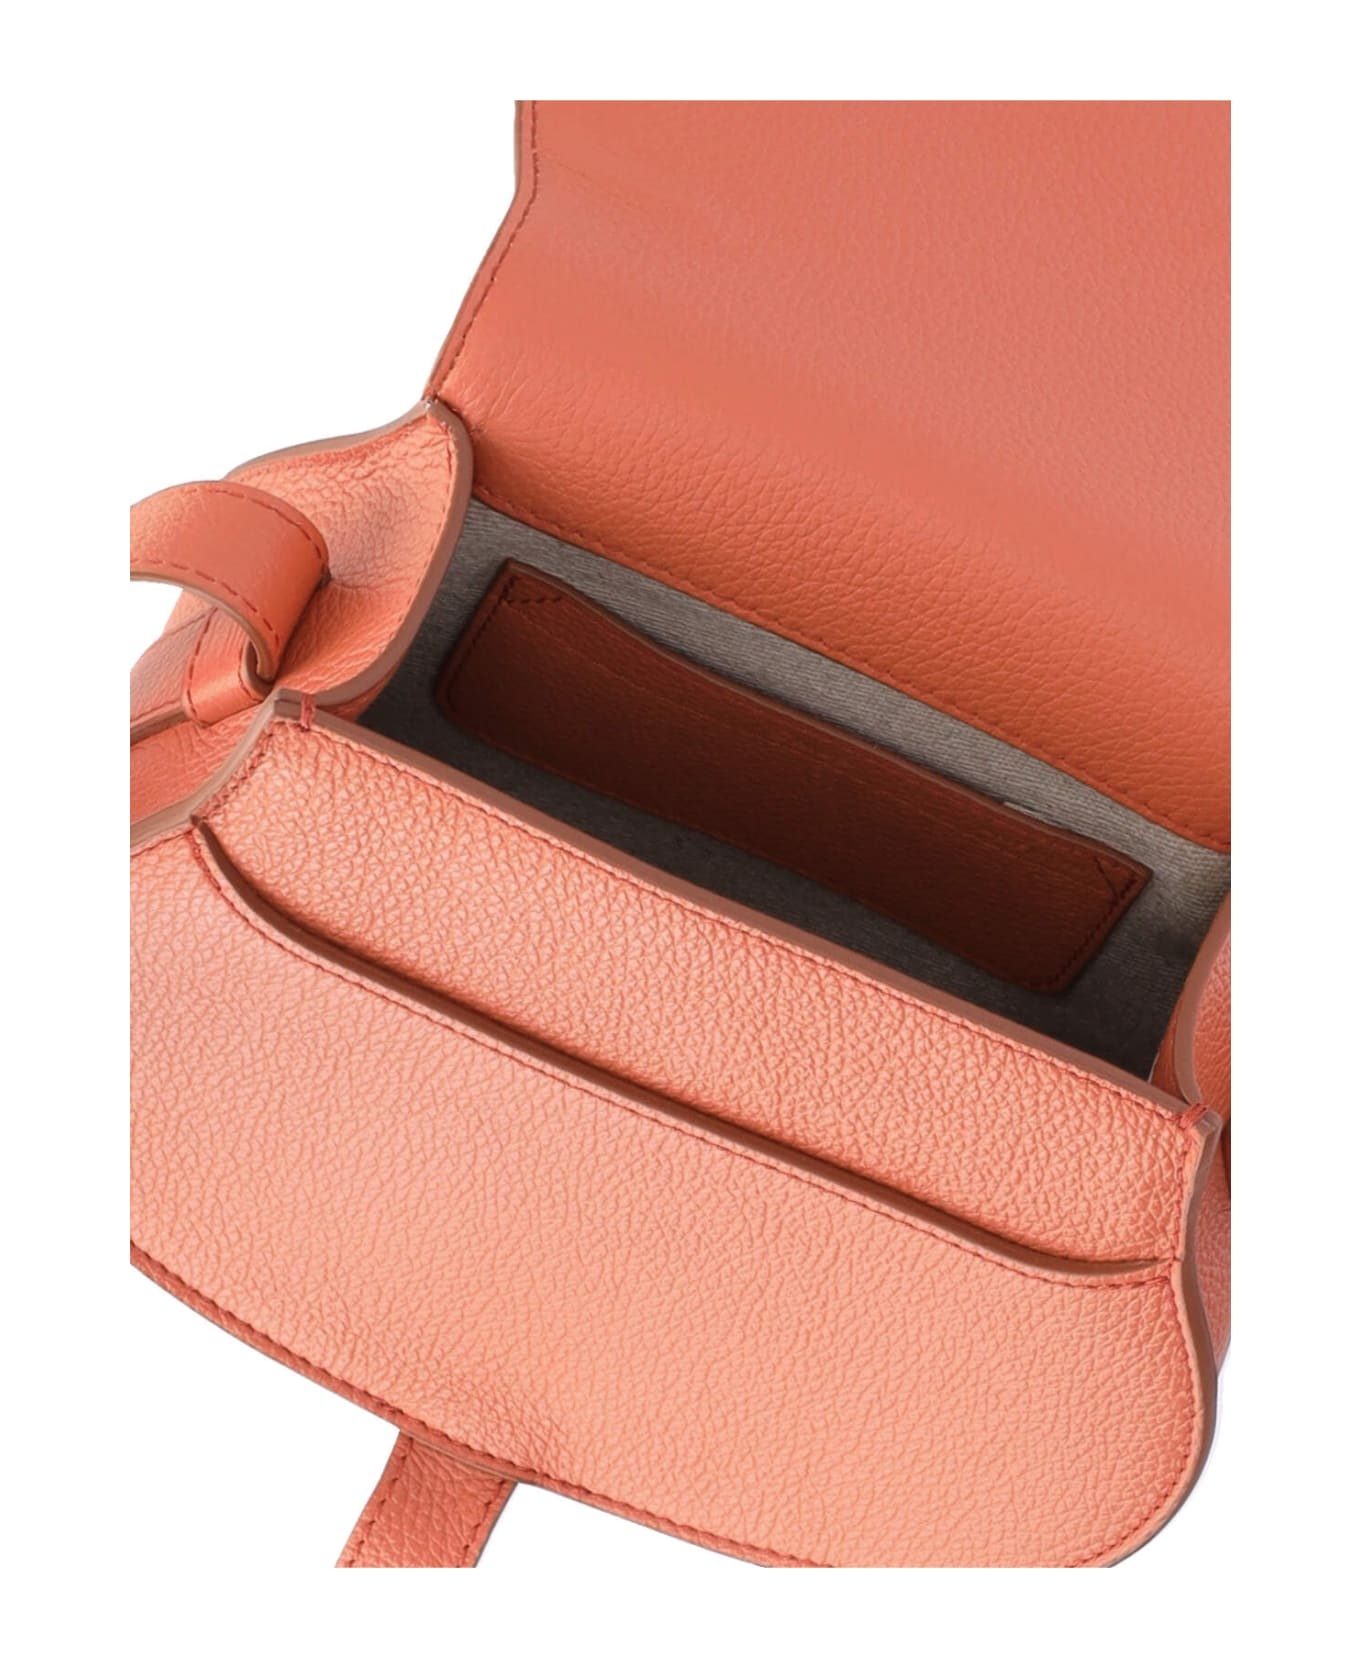 Mercie Shoulder Bag In Orange Leather - 4